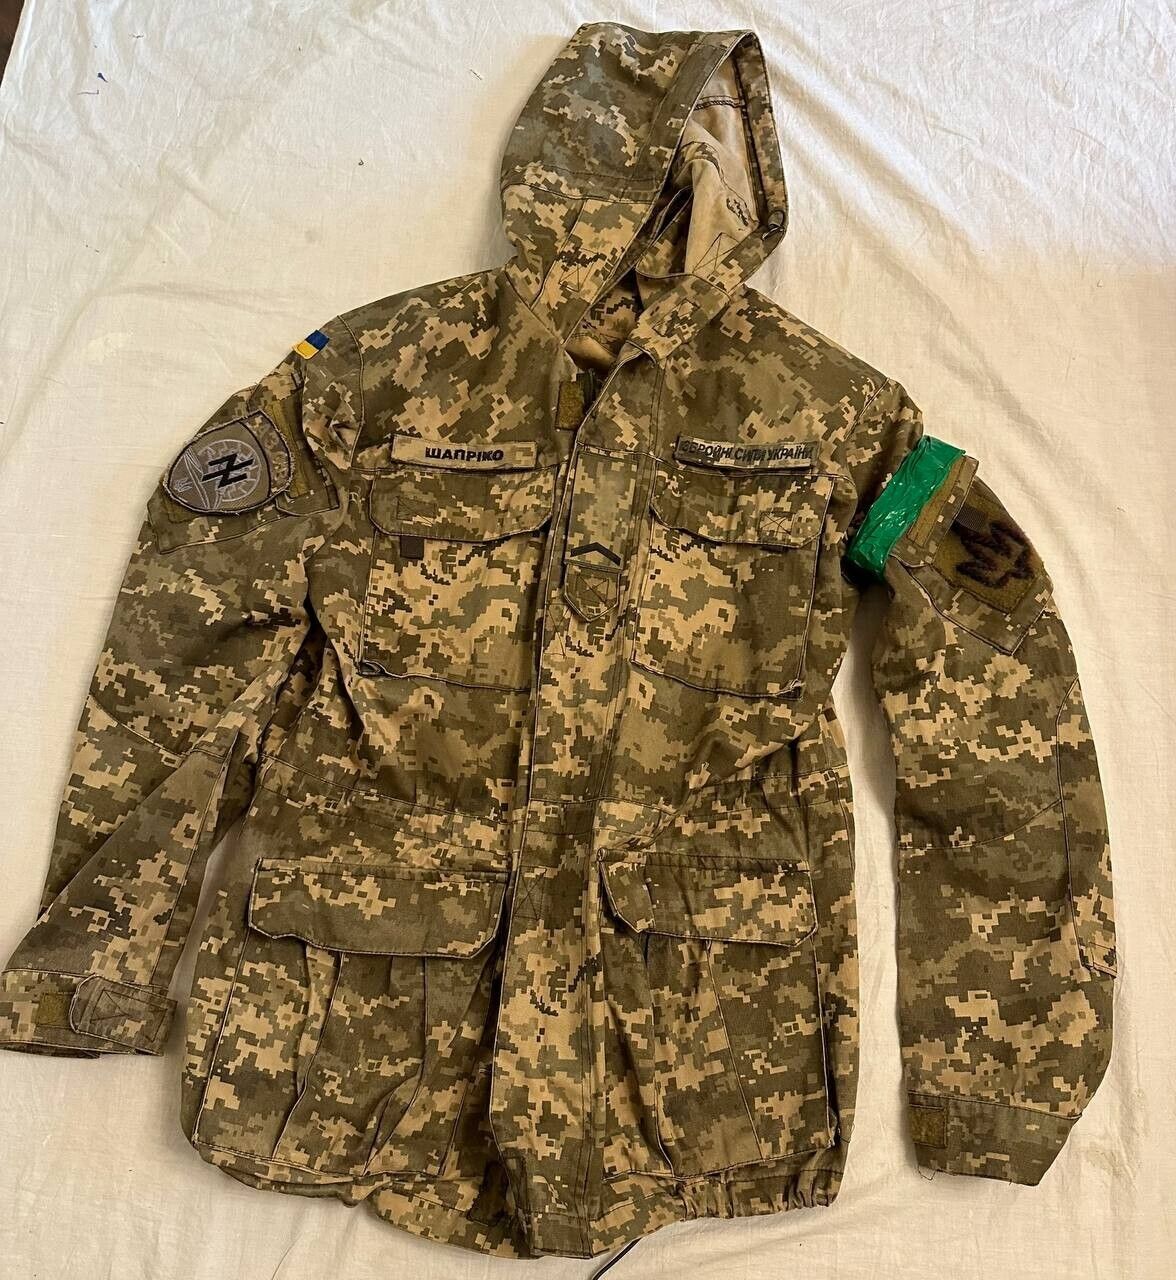 Ukrainian Army Winter Jacket A Z BAttalion Uniform Chevrons Flag Pants Hat Boots